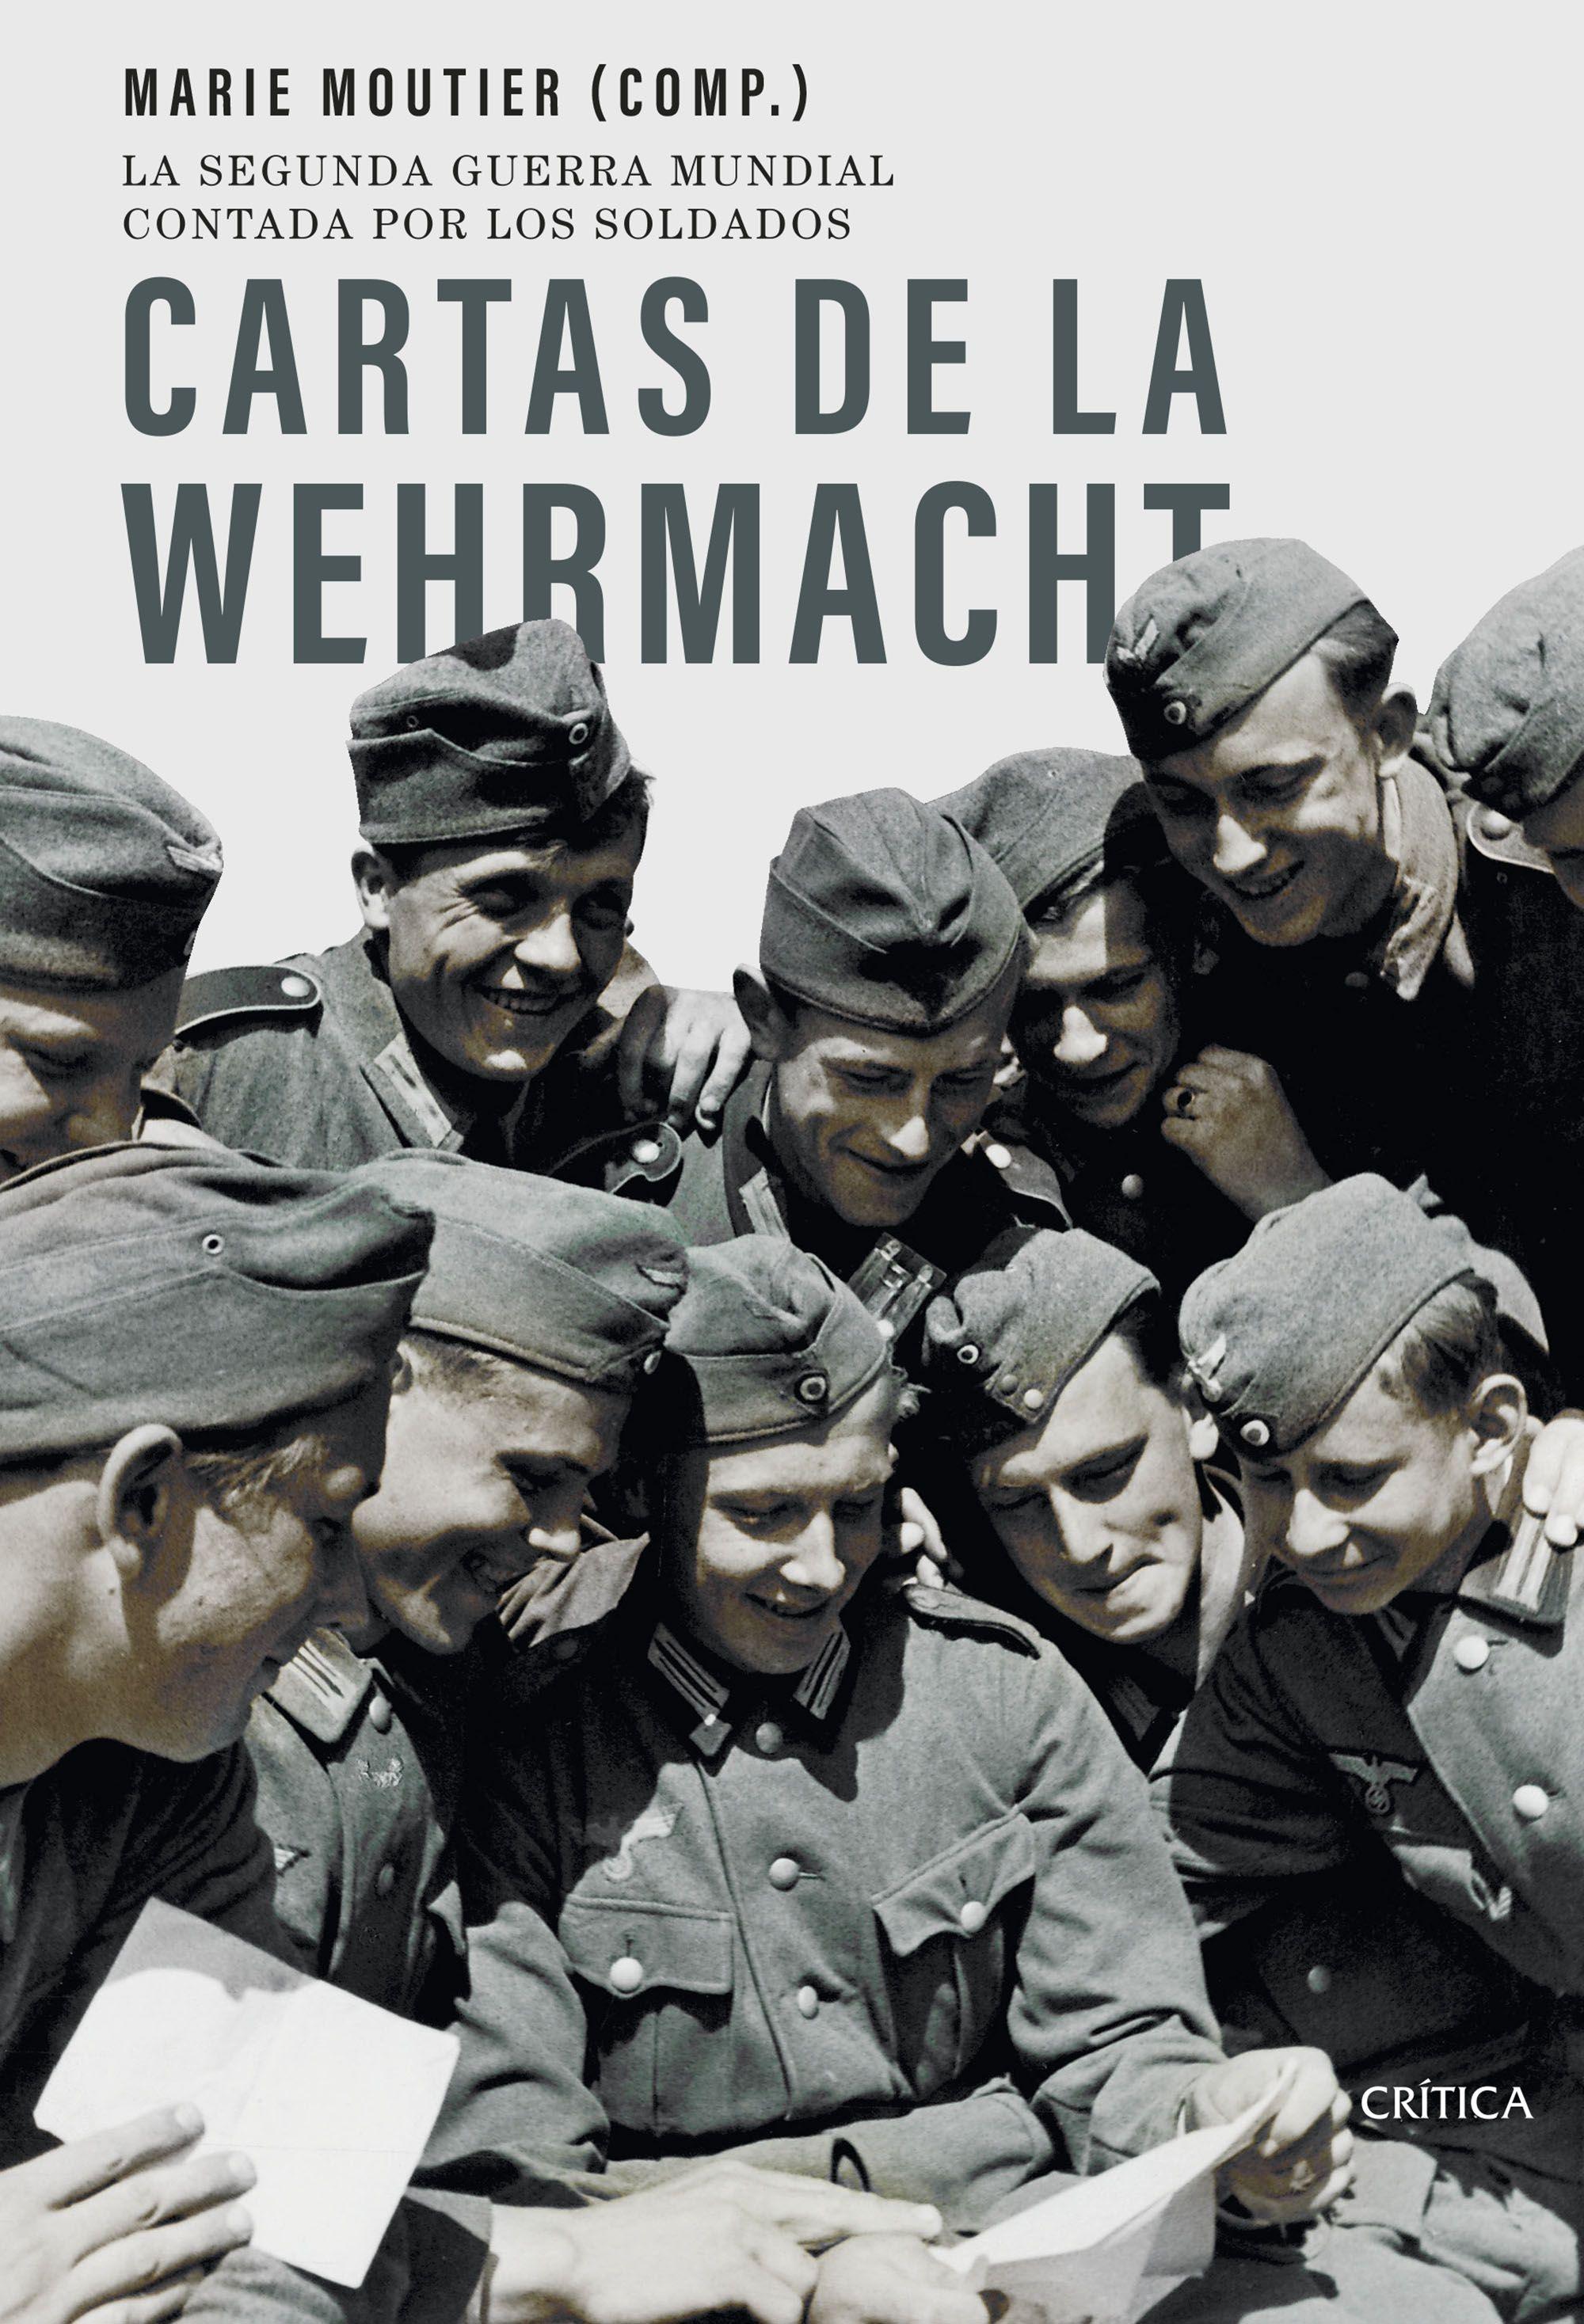 Cartas de la Wehrmacht "La segunda guerra mundial contada por los soldados"